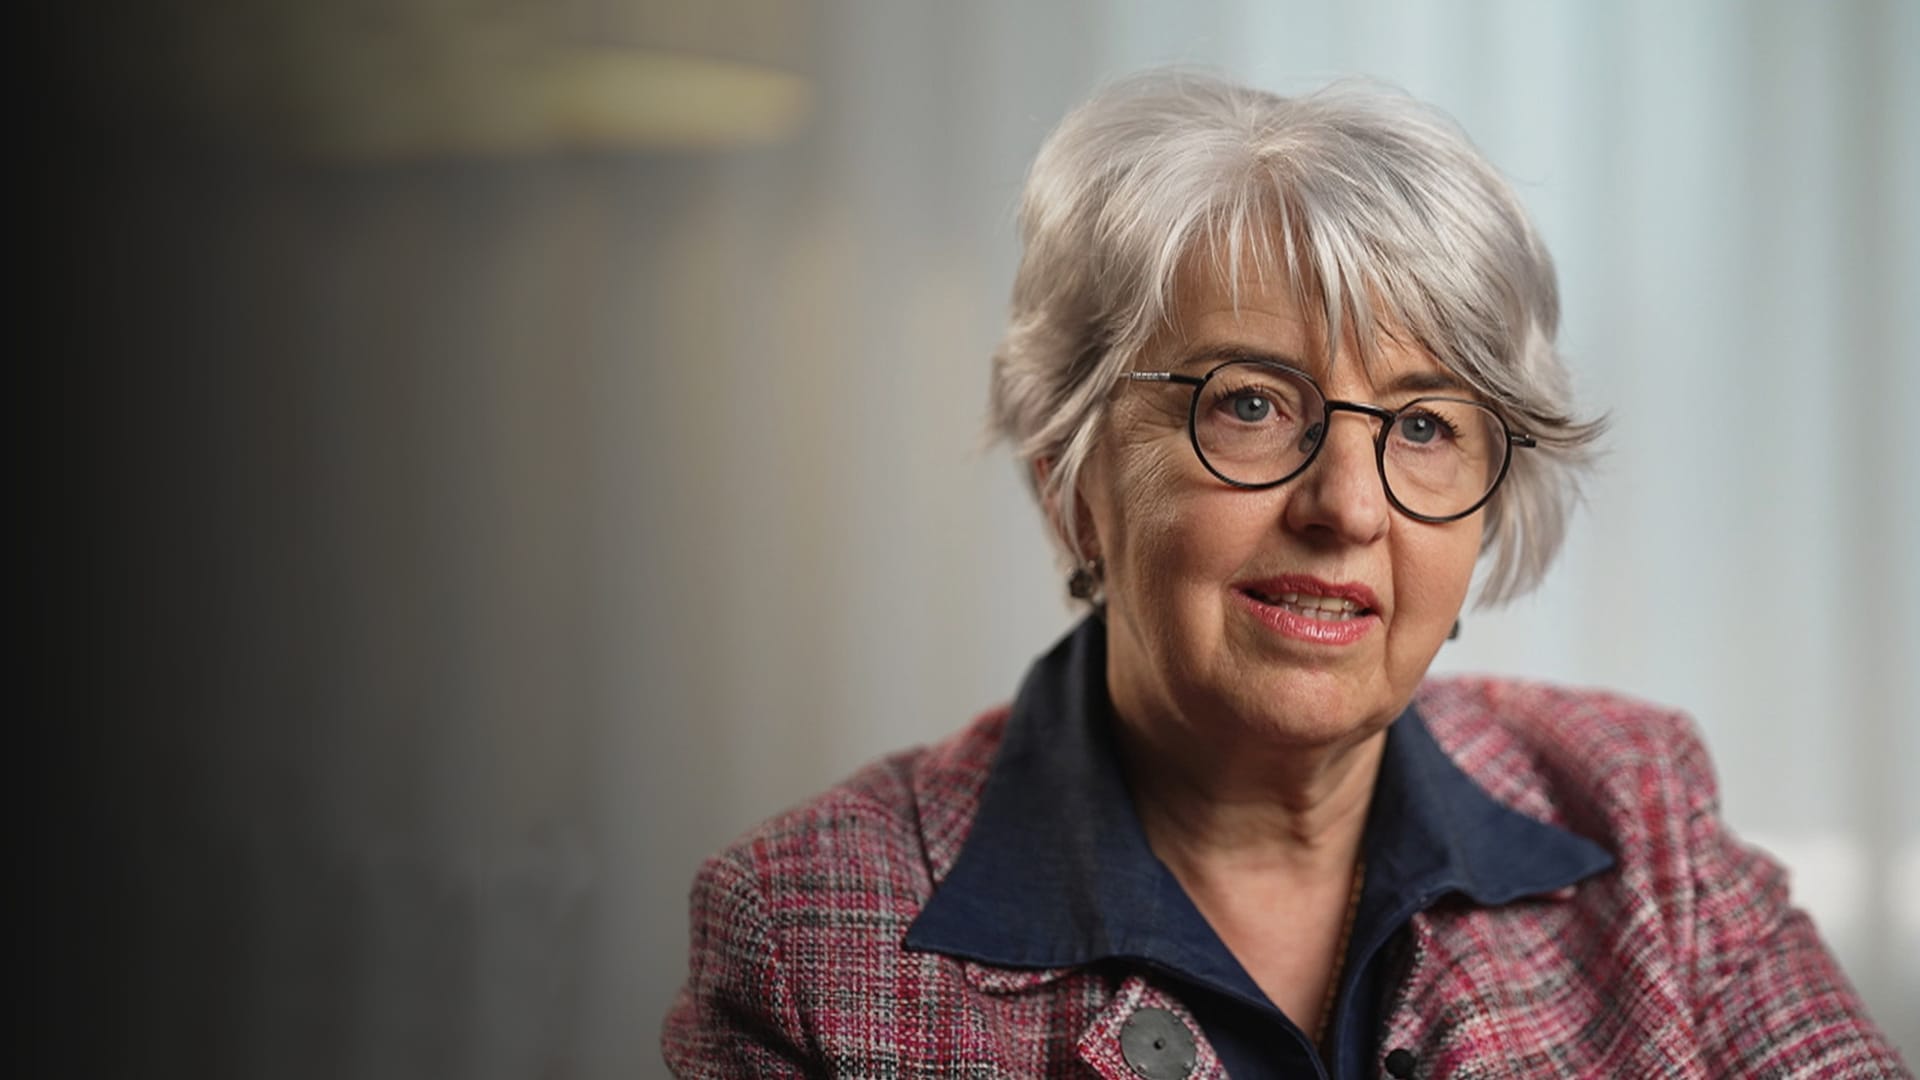 Elisabeth Baume-Schneider – Die erste Jurassierin im Bundesrat